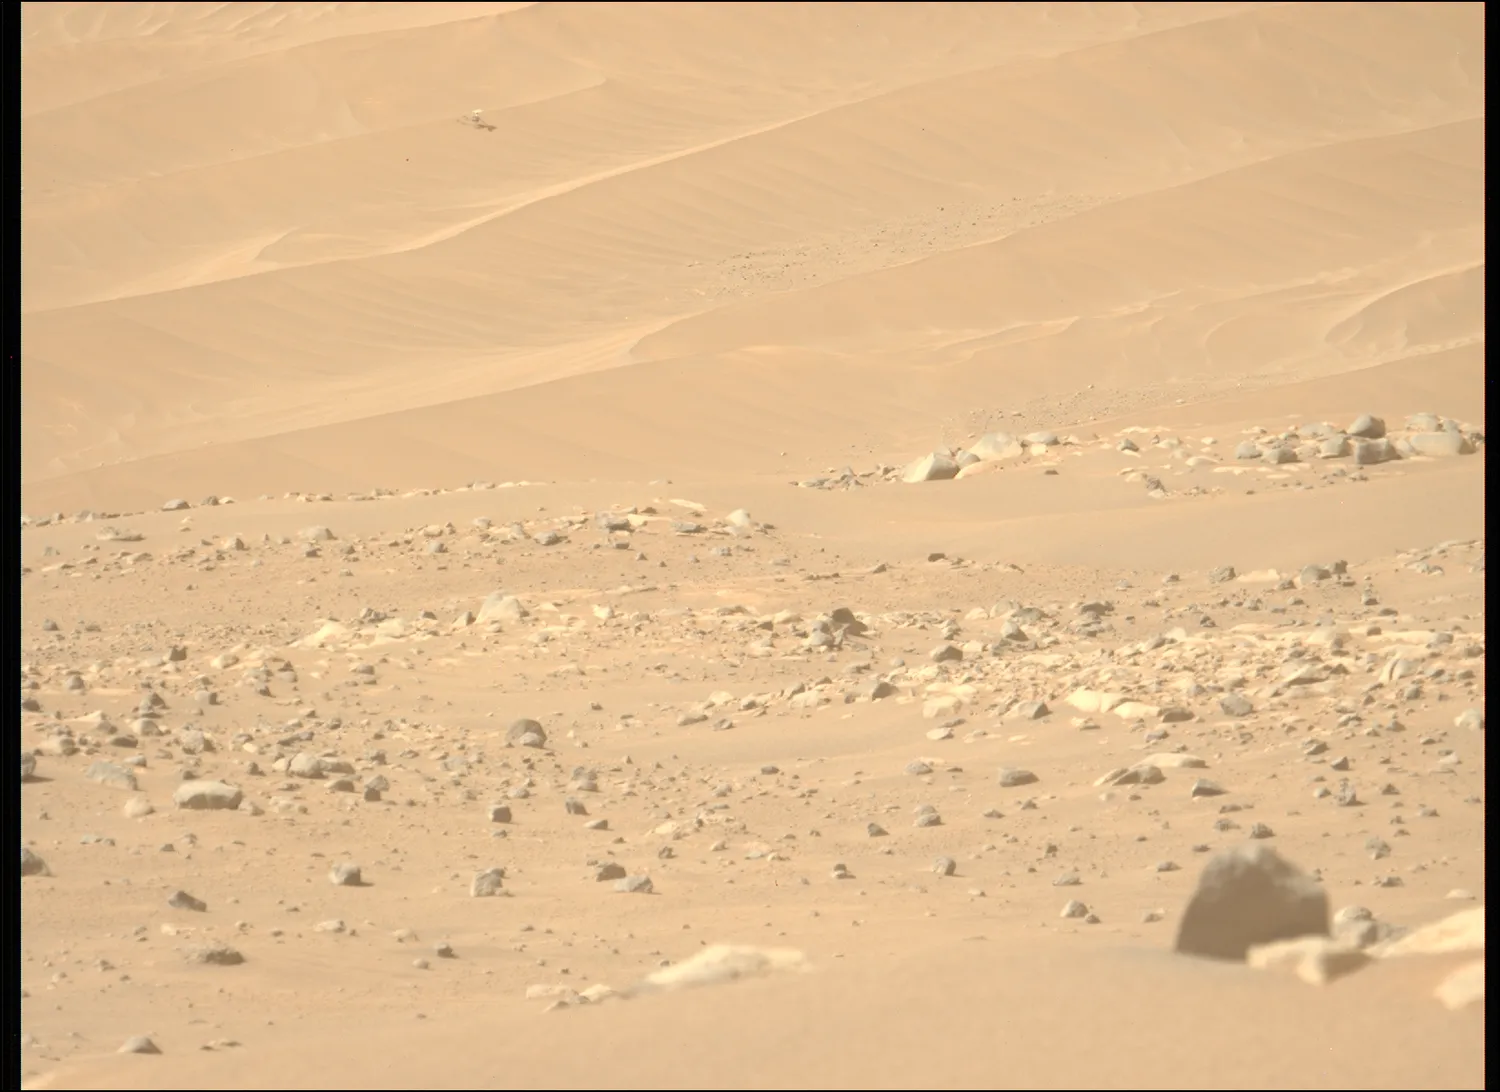 ein kleiner Hubschrauber steht regungslos auf einer Sanddüne in der Ferne, während rote Erde und Felsen die Szene ausfüllen